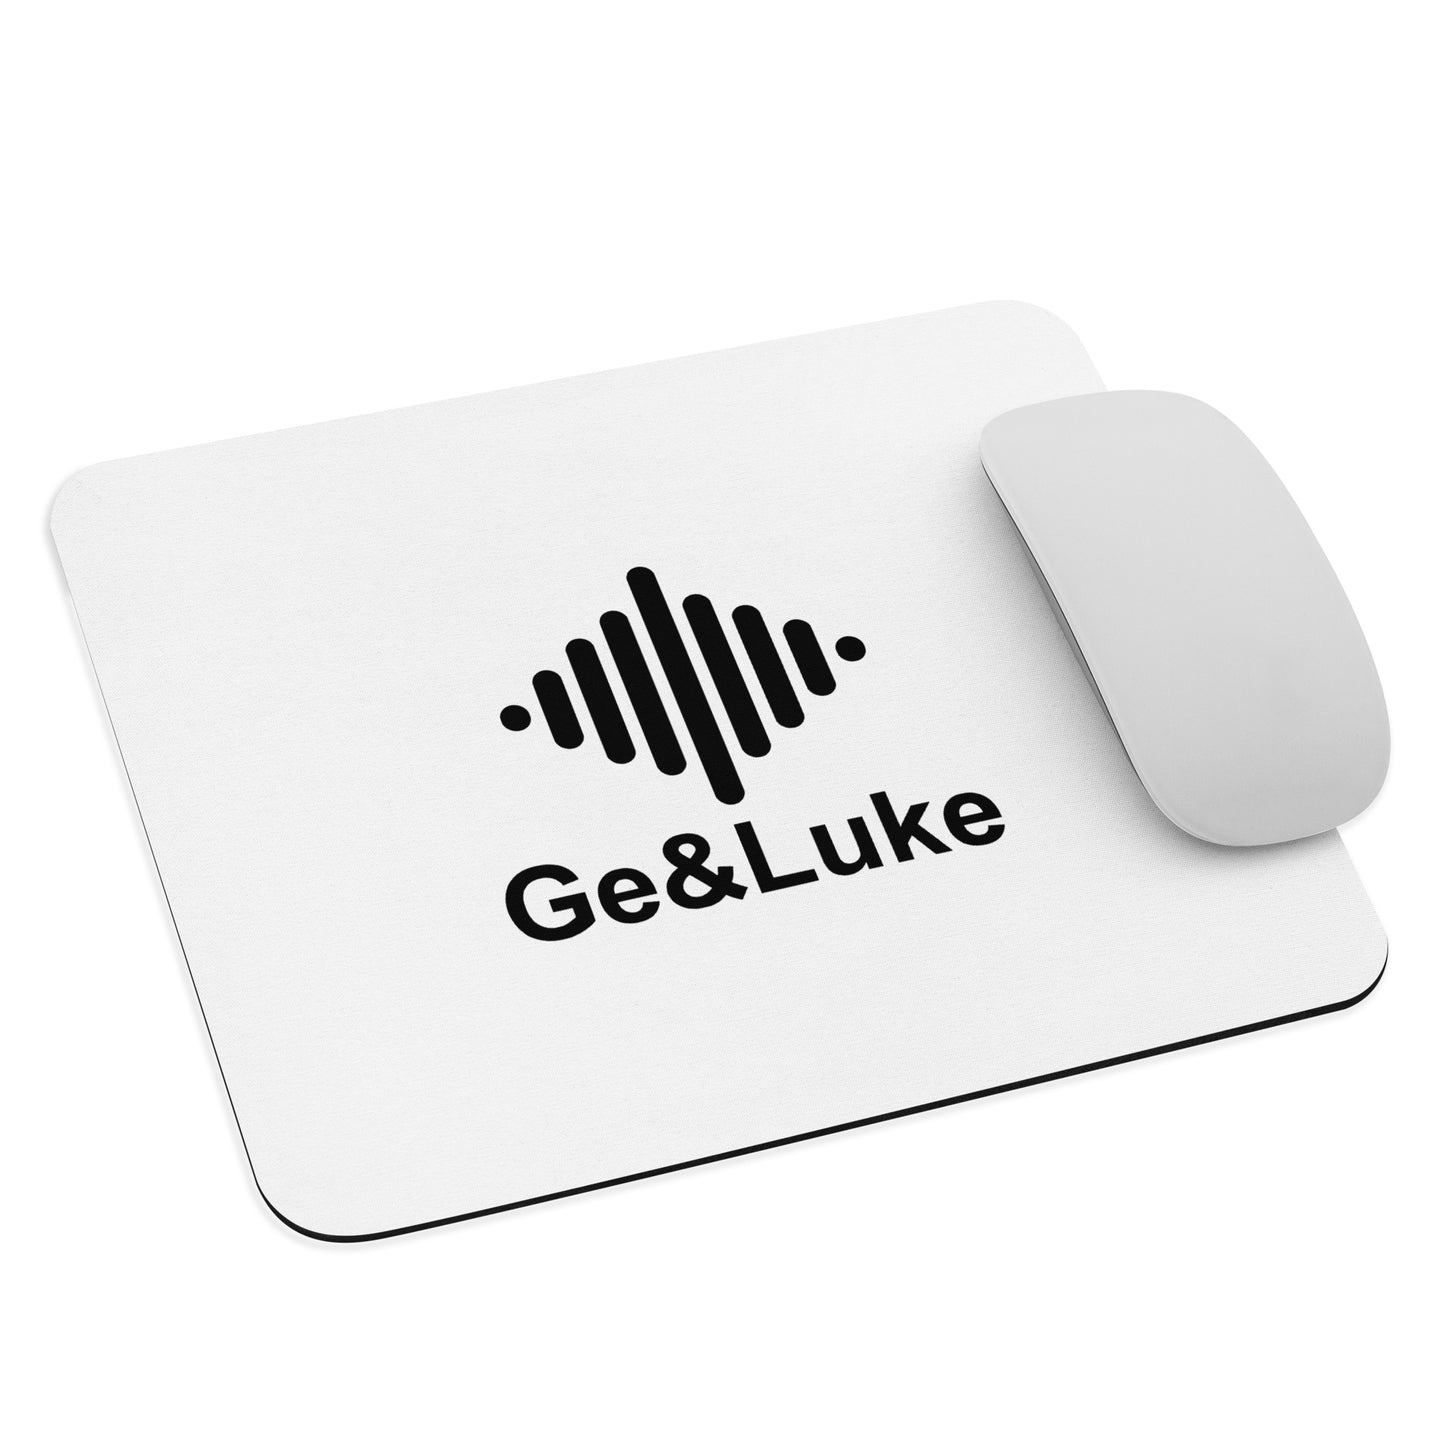 Ge & Luke Logo Mouse Pad